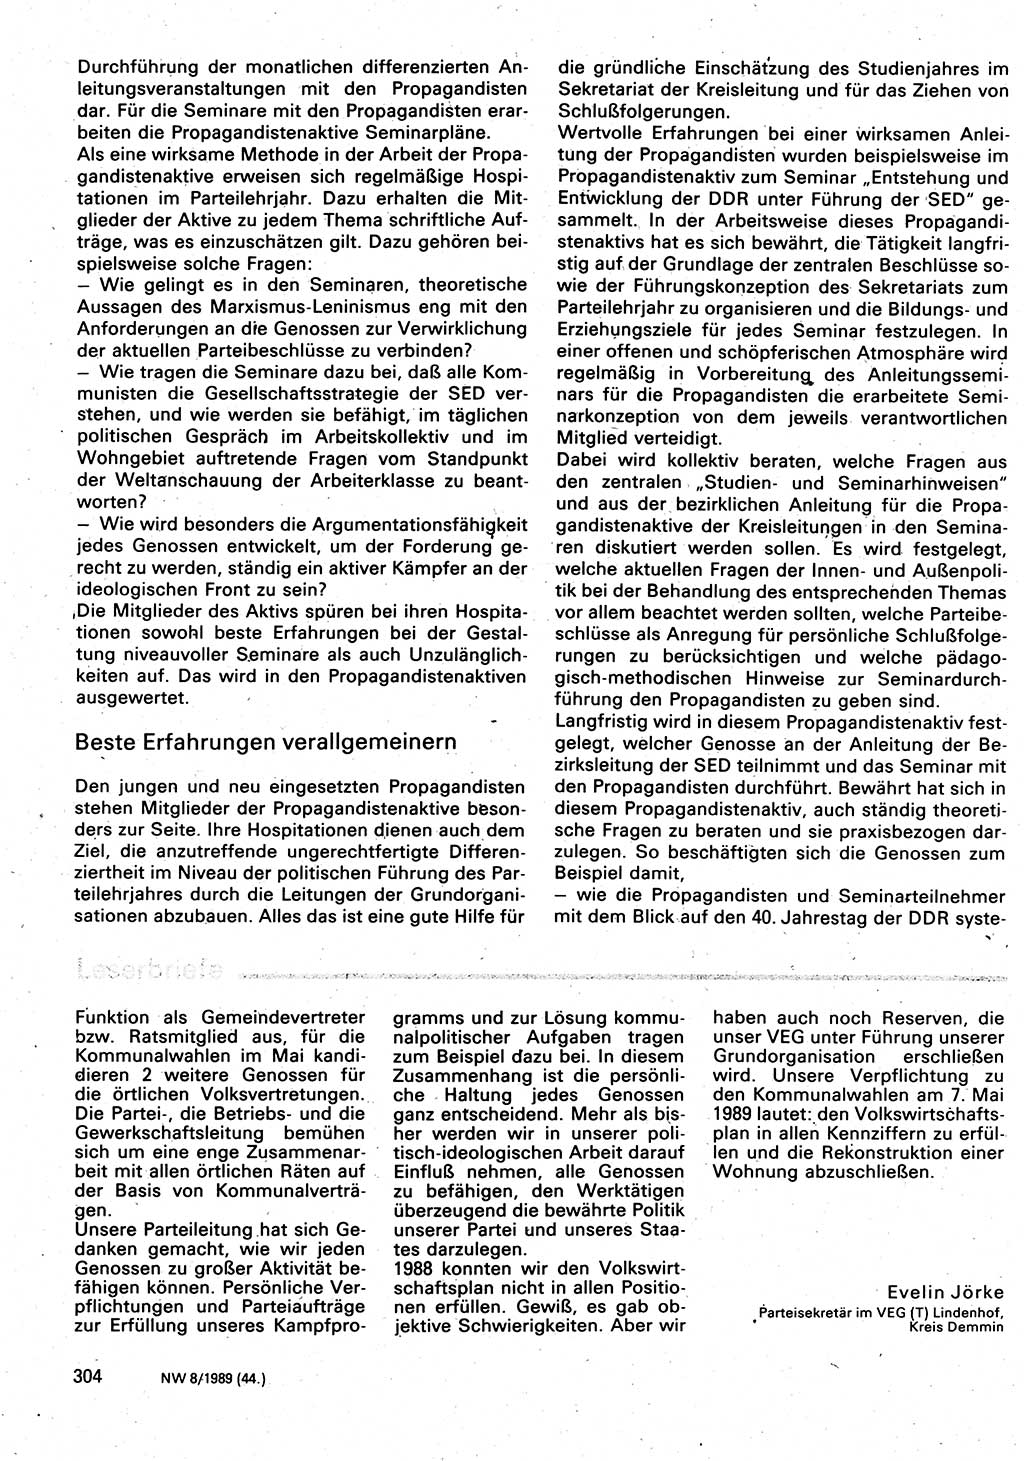 Neuer Weg (NW), Organ des Zentralkomitees (ZK) der SED (Sozialistische Einheitspartei Deutschlands) für Fragen des Parteilebens, 44. Jahrgang [Deutsche Demokratische Republik (DDR)] 1989, Seite 304 (NW ZK SED DDR 1989, S. 304)